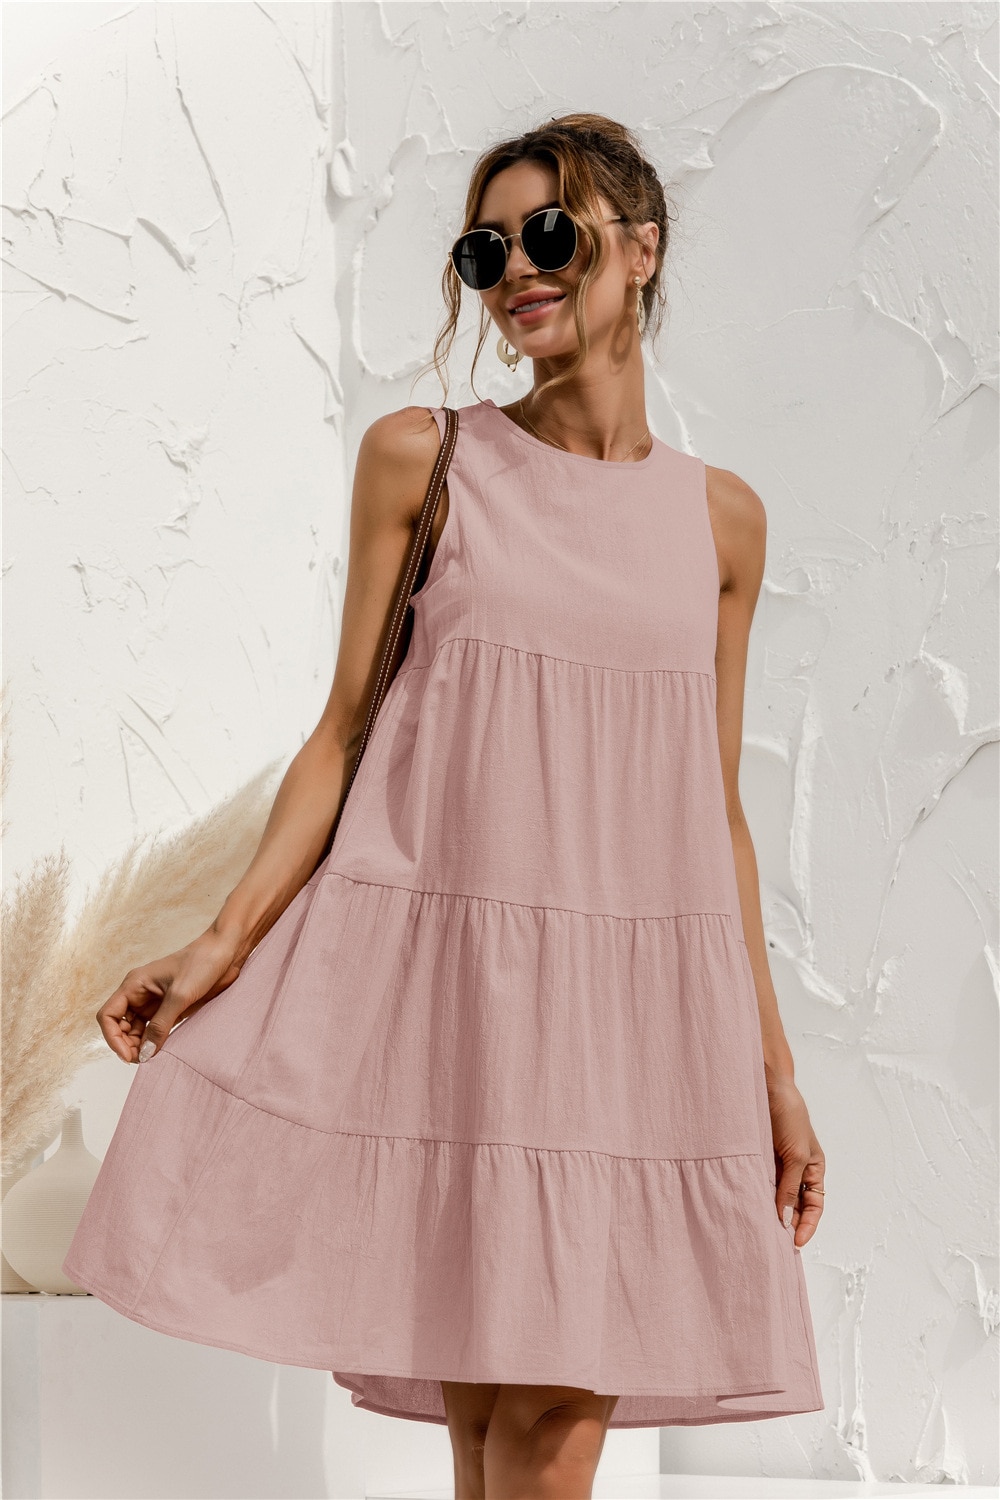 Women's Summer Sleeveless O-Neck Dress